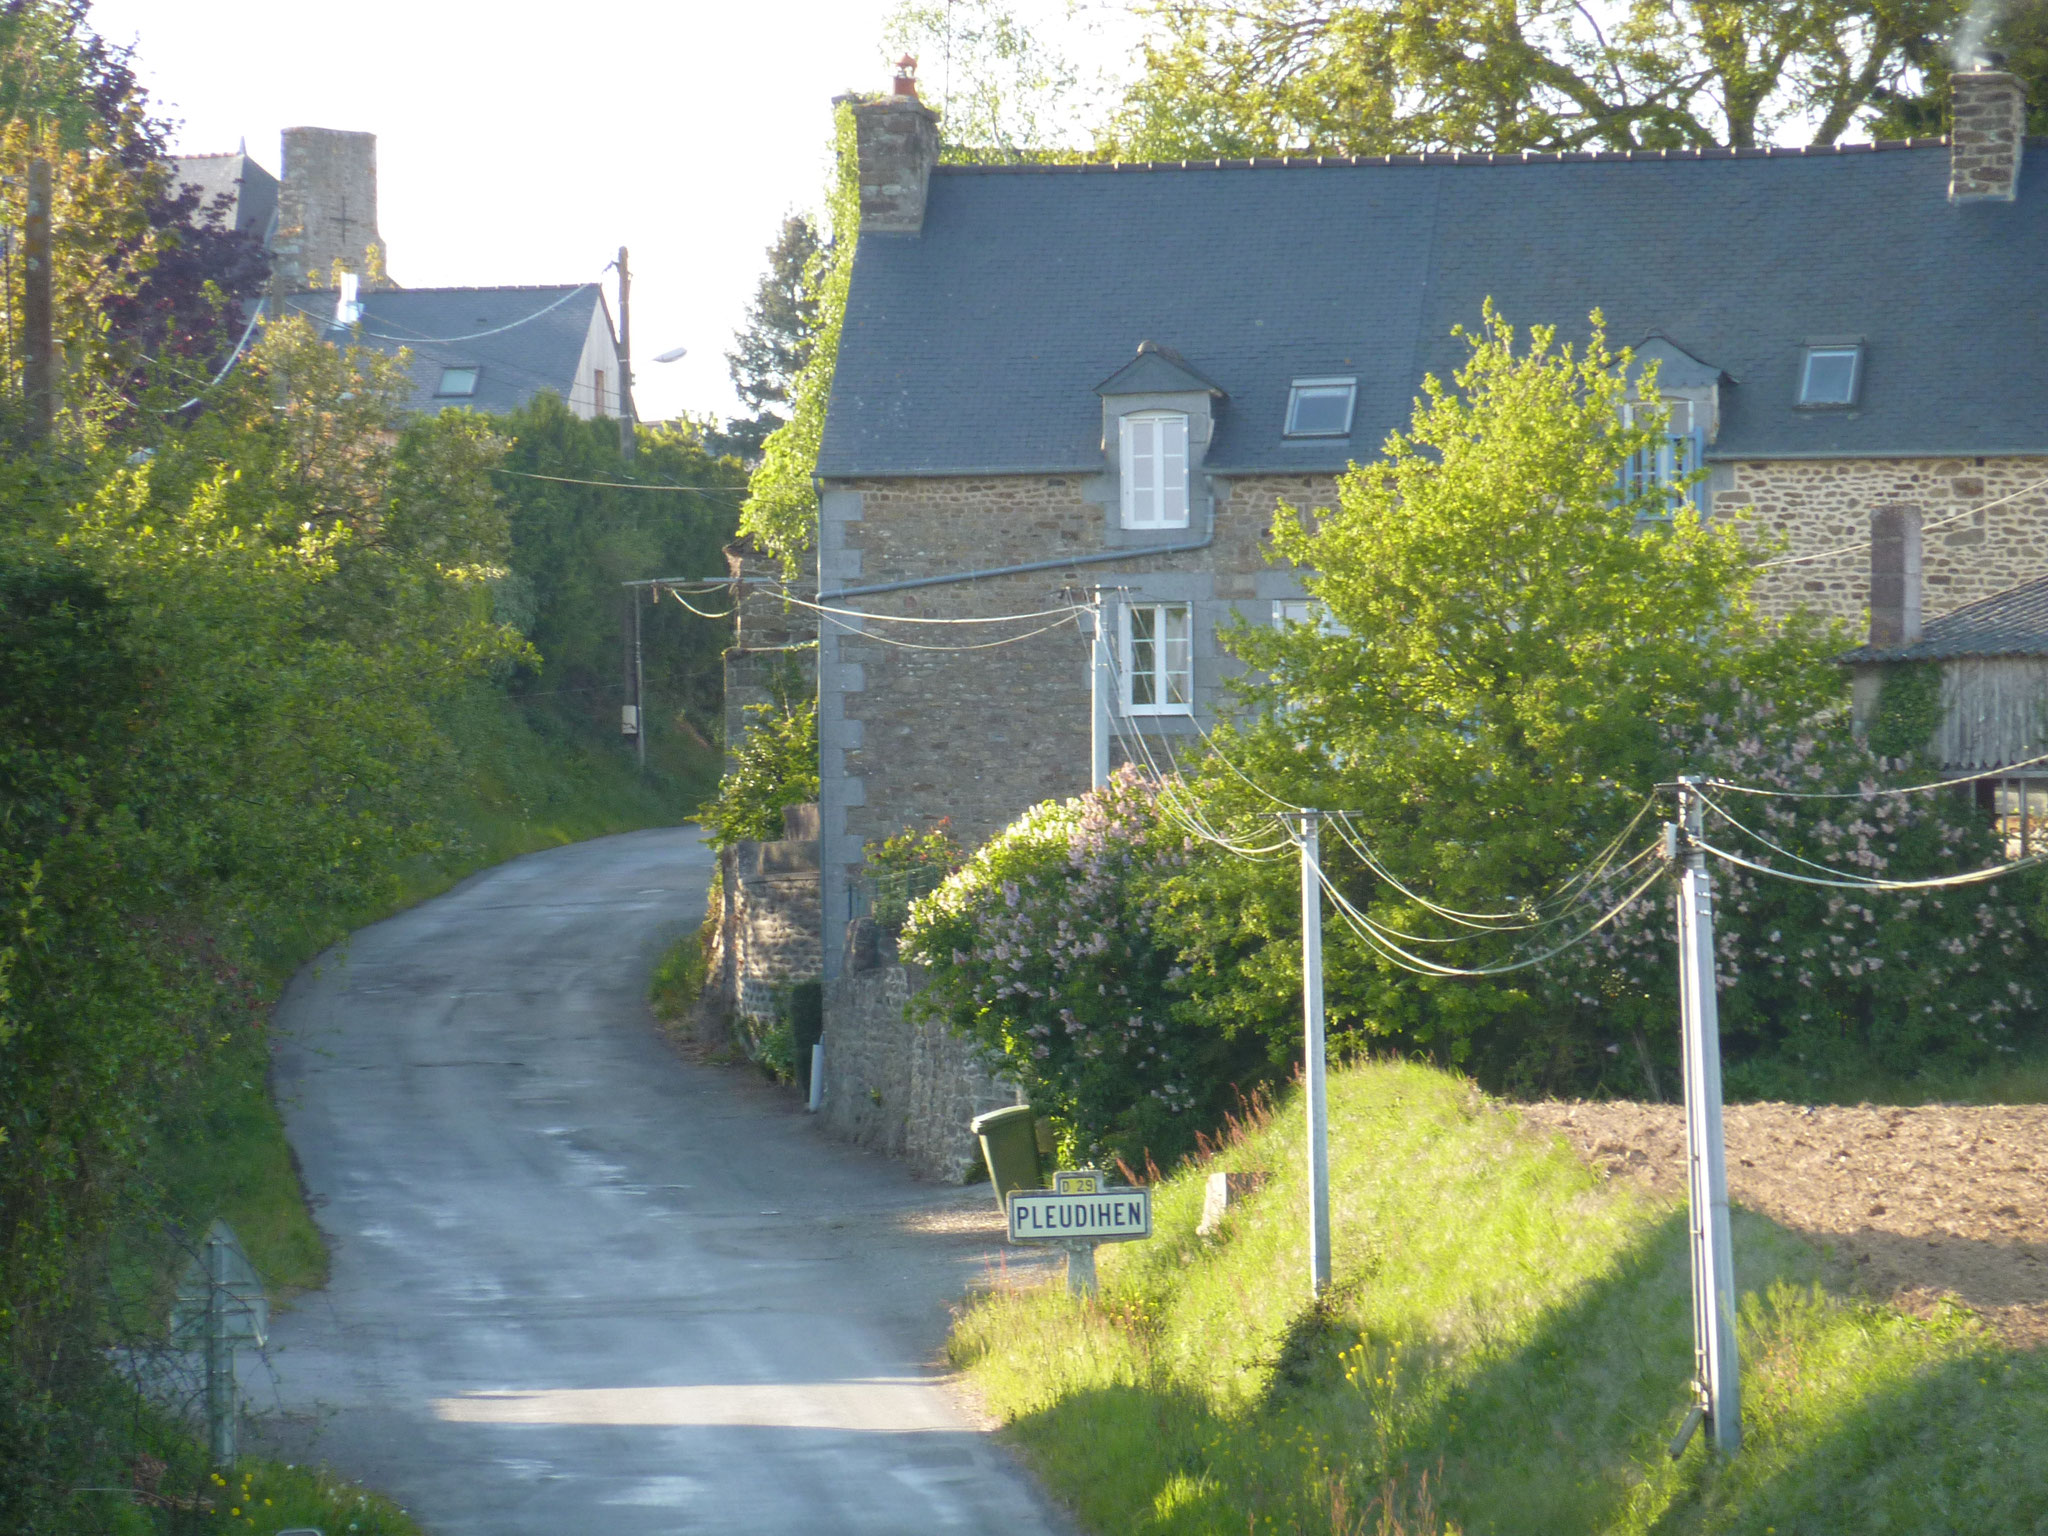 Arrivée au village de Pleudihen par la route de Dinan.2017 copyright collection personnelle